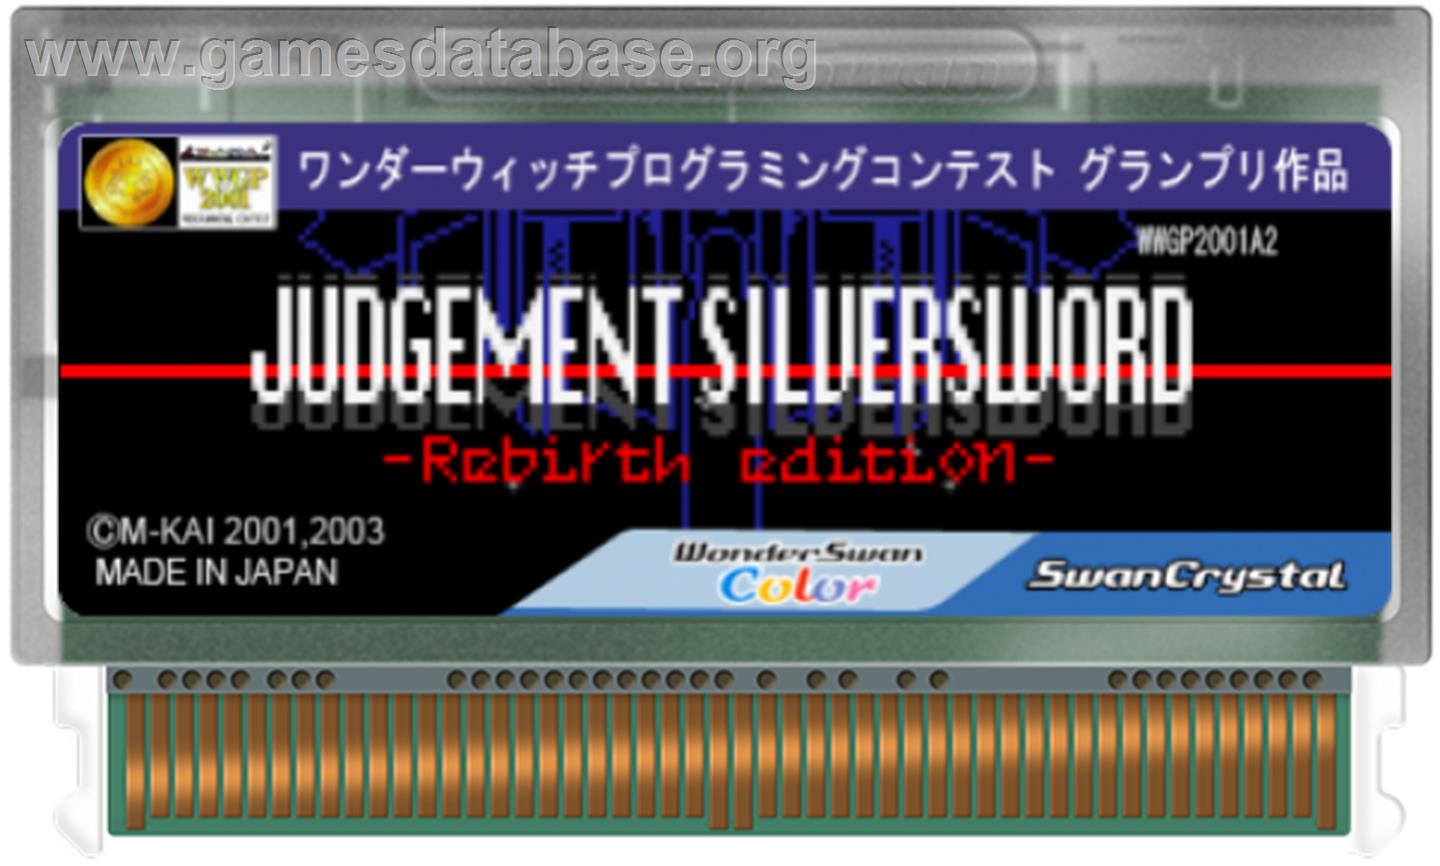 Judgement Silversword: Rebirth Edition - Bandai WonderSwan Color - Artwork - Cartridge